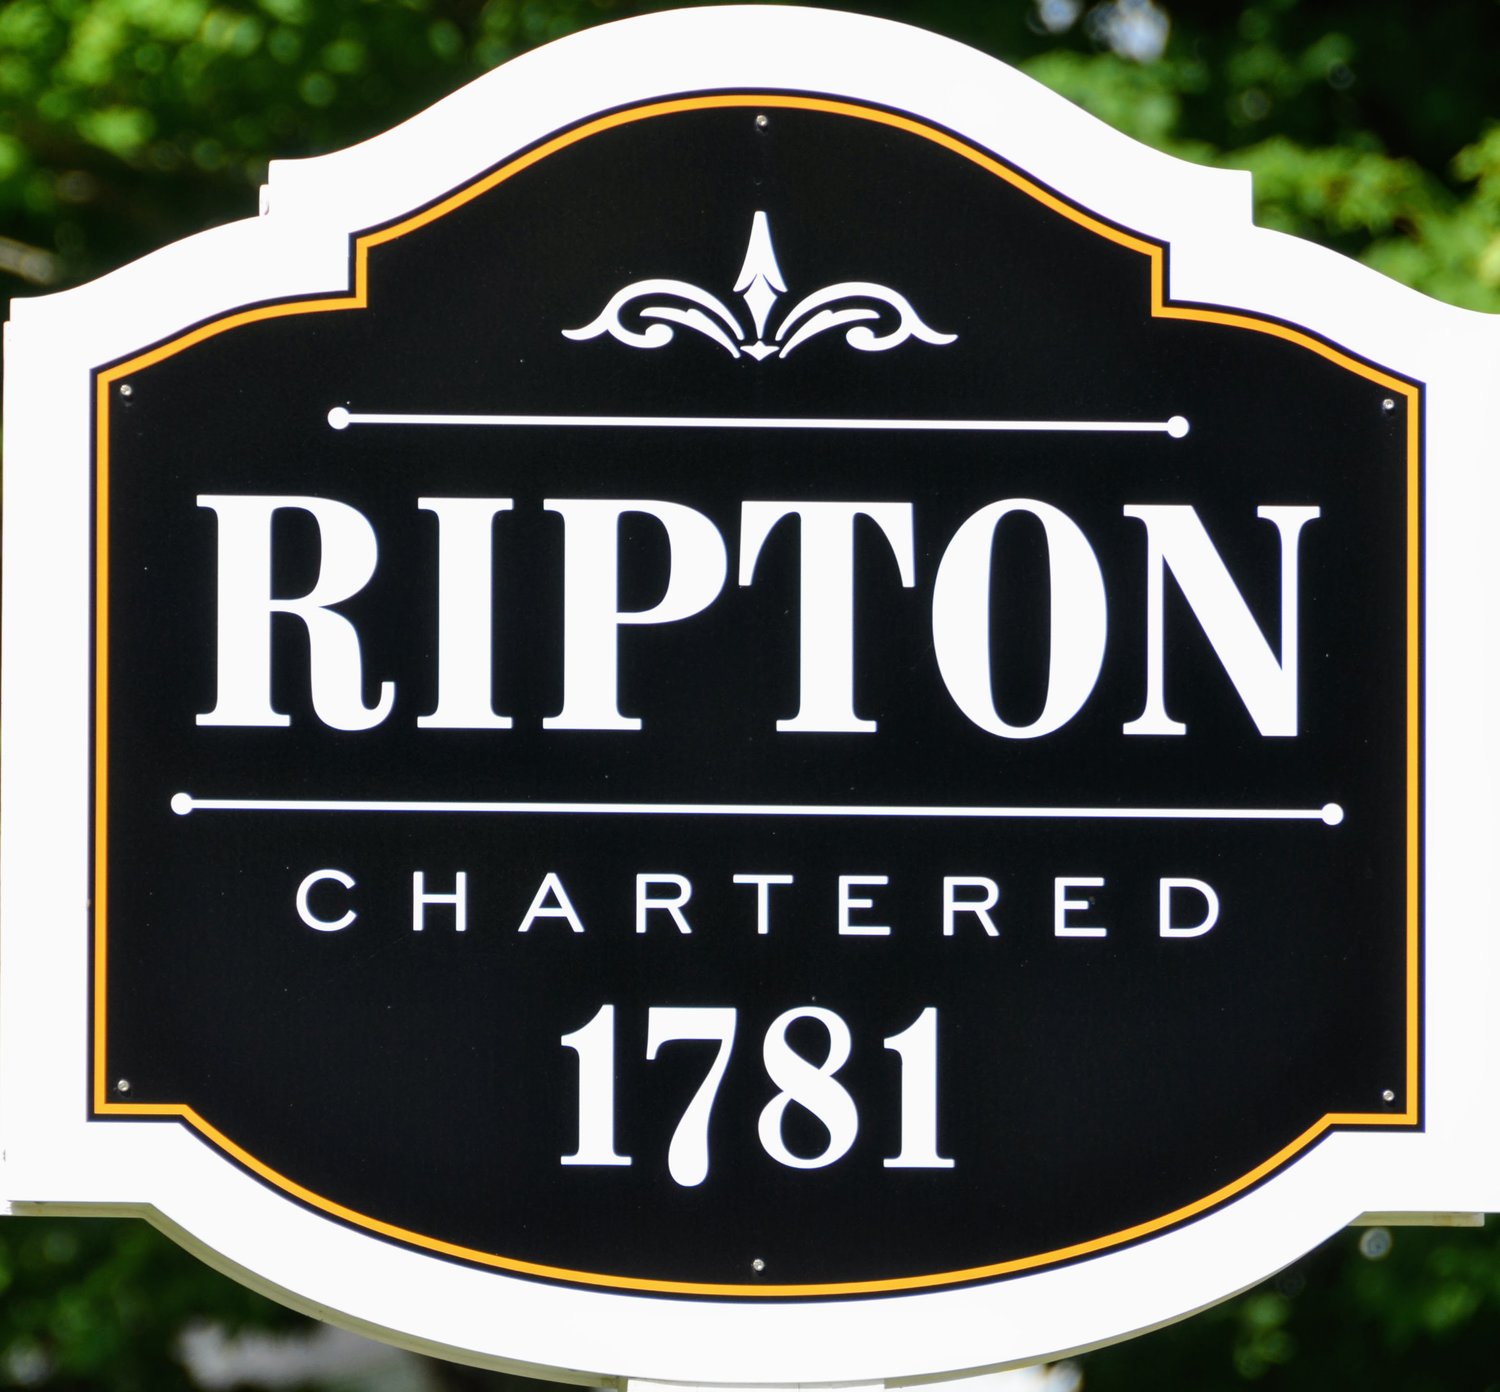 Town of Ripton